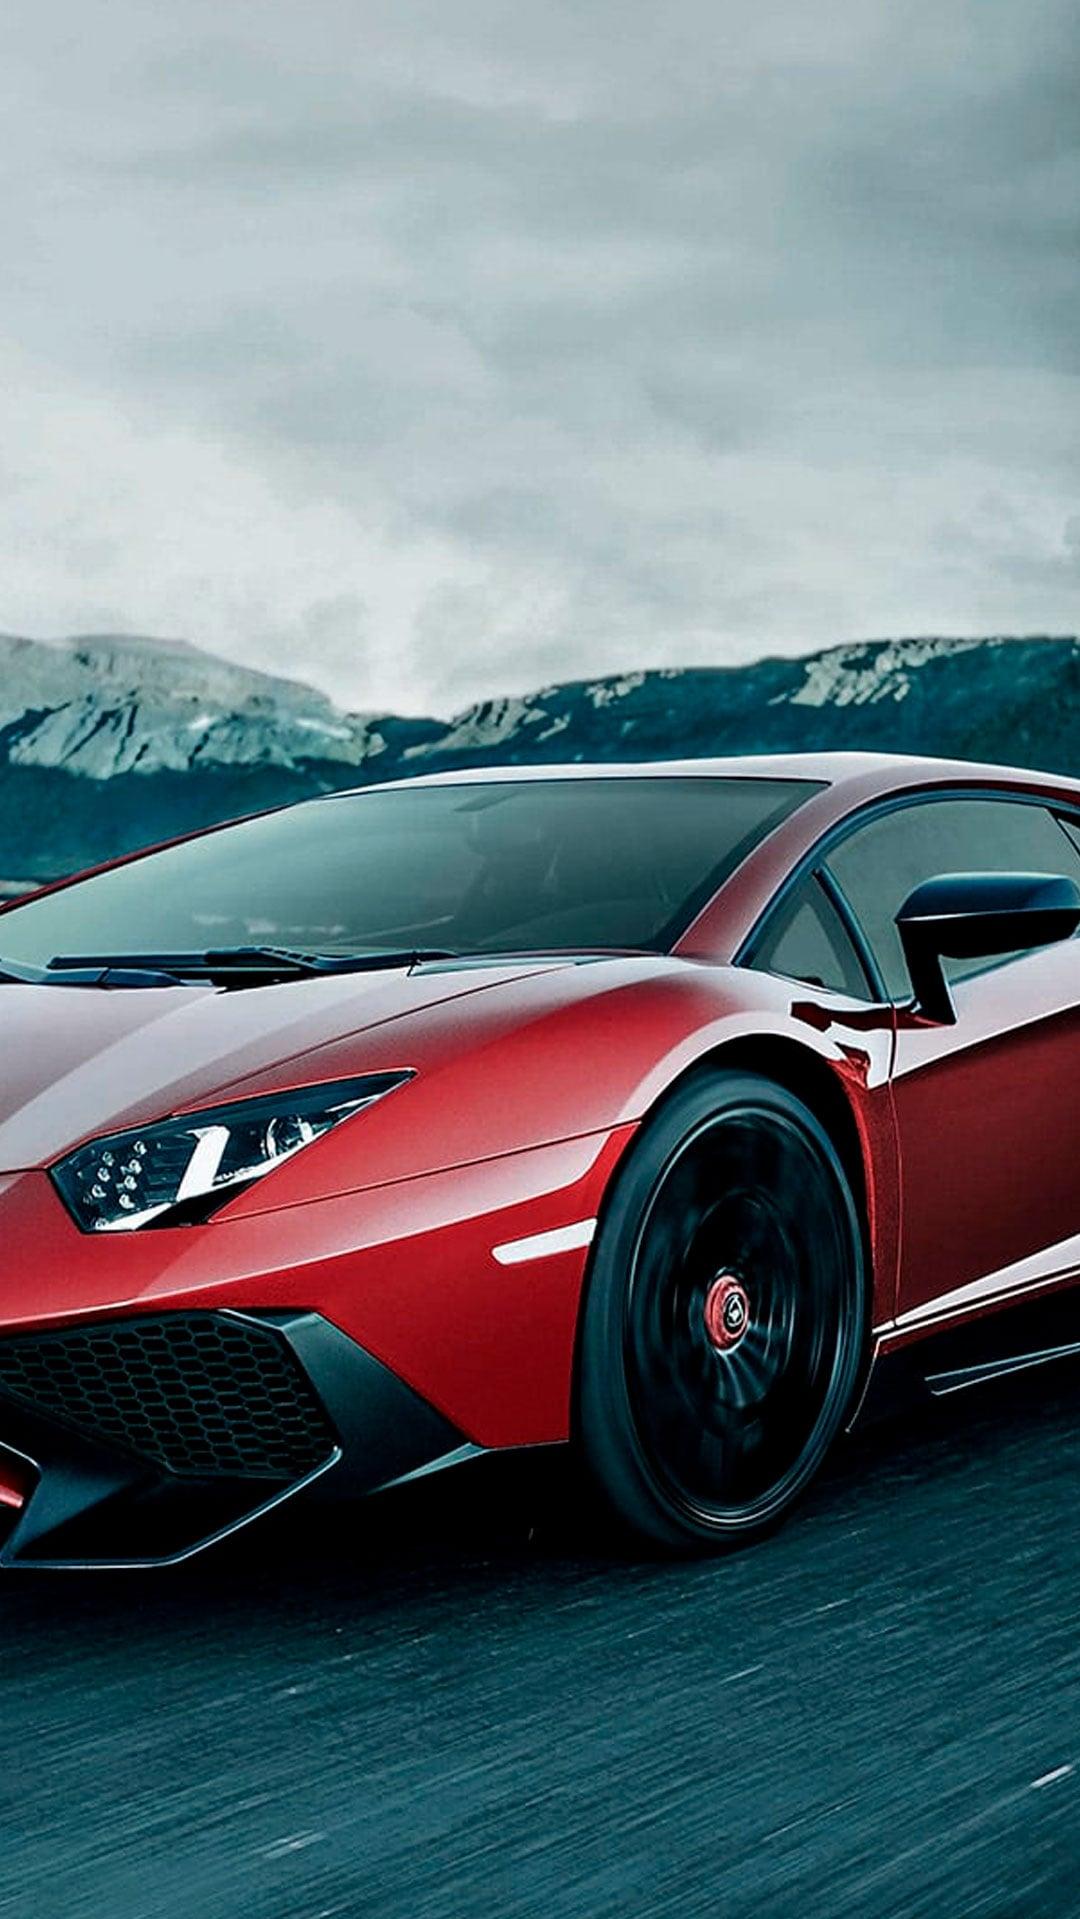 Lamborghini Aventador SuperVeloce Coup Pictures Videos